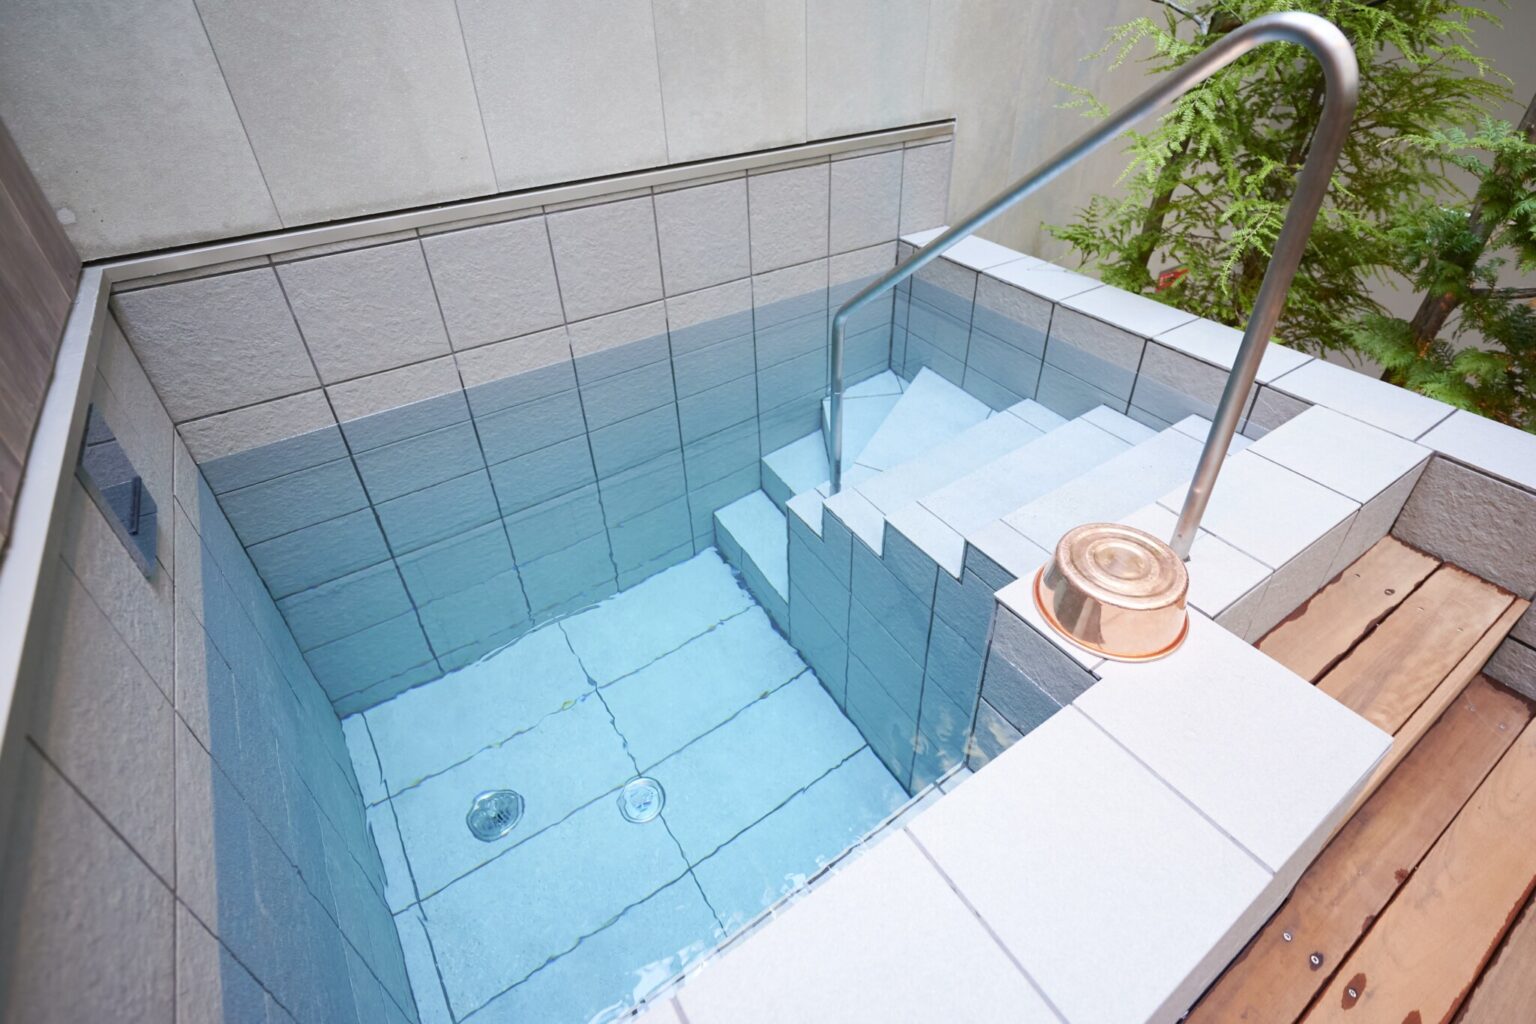 関東最深級を誇る約150cmの水風呂は思い切って頭まで浸かってみて。